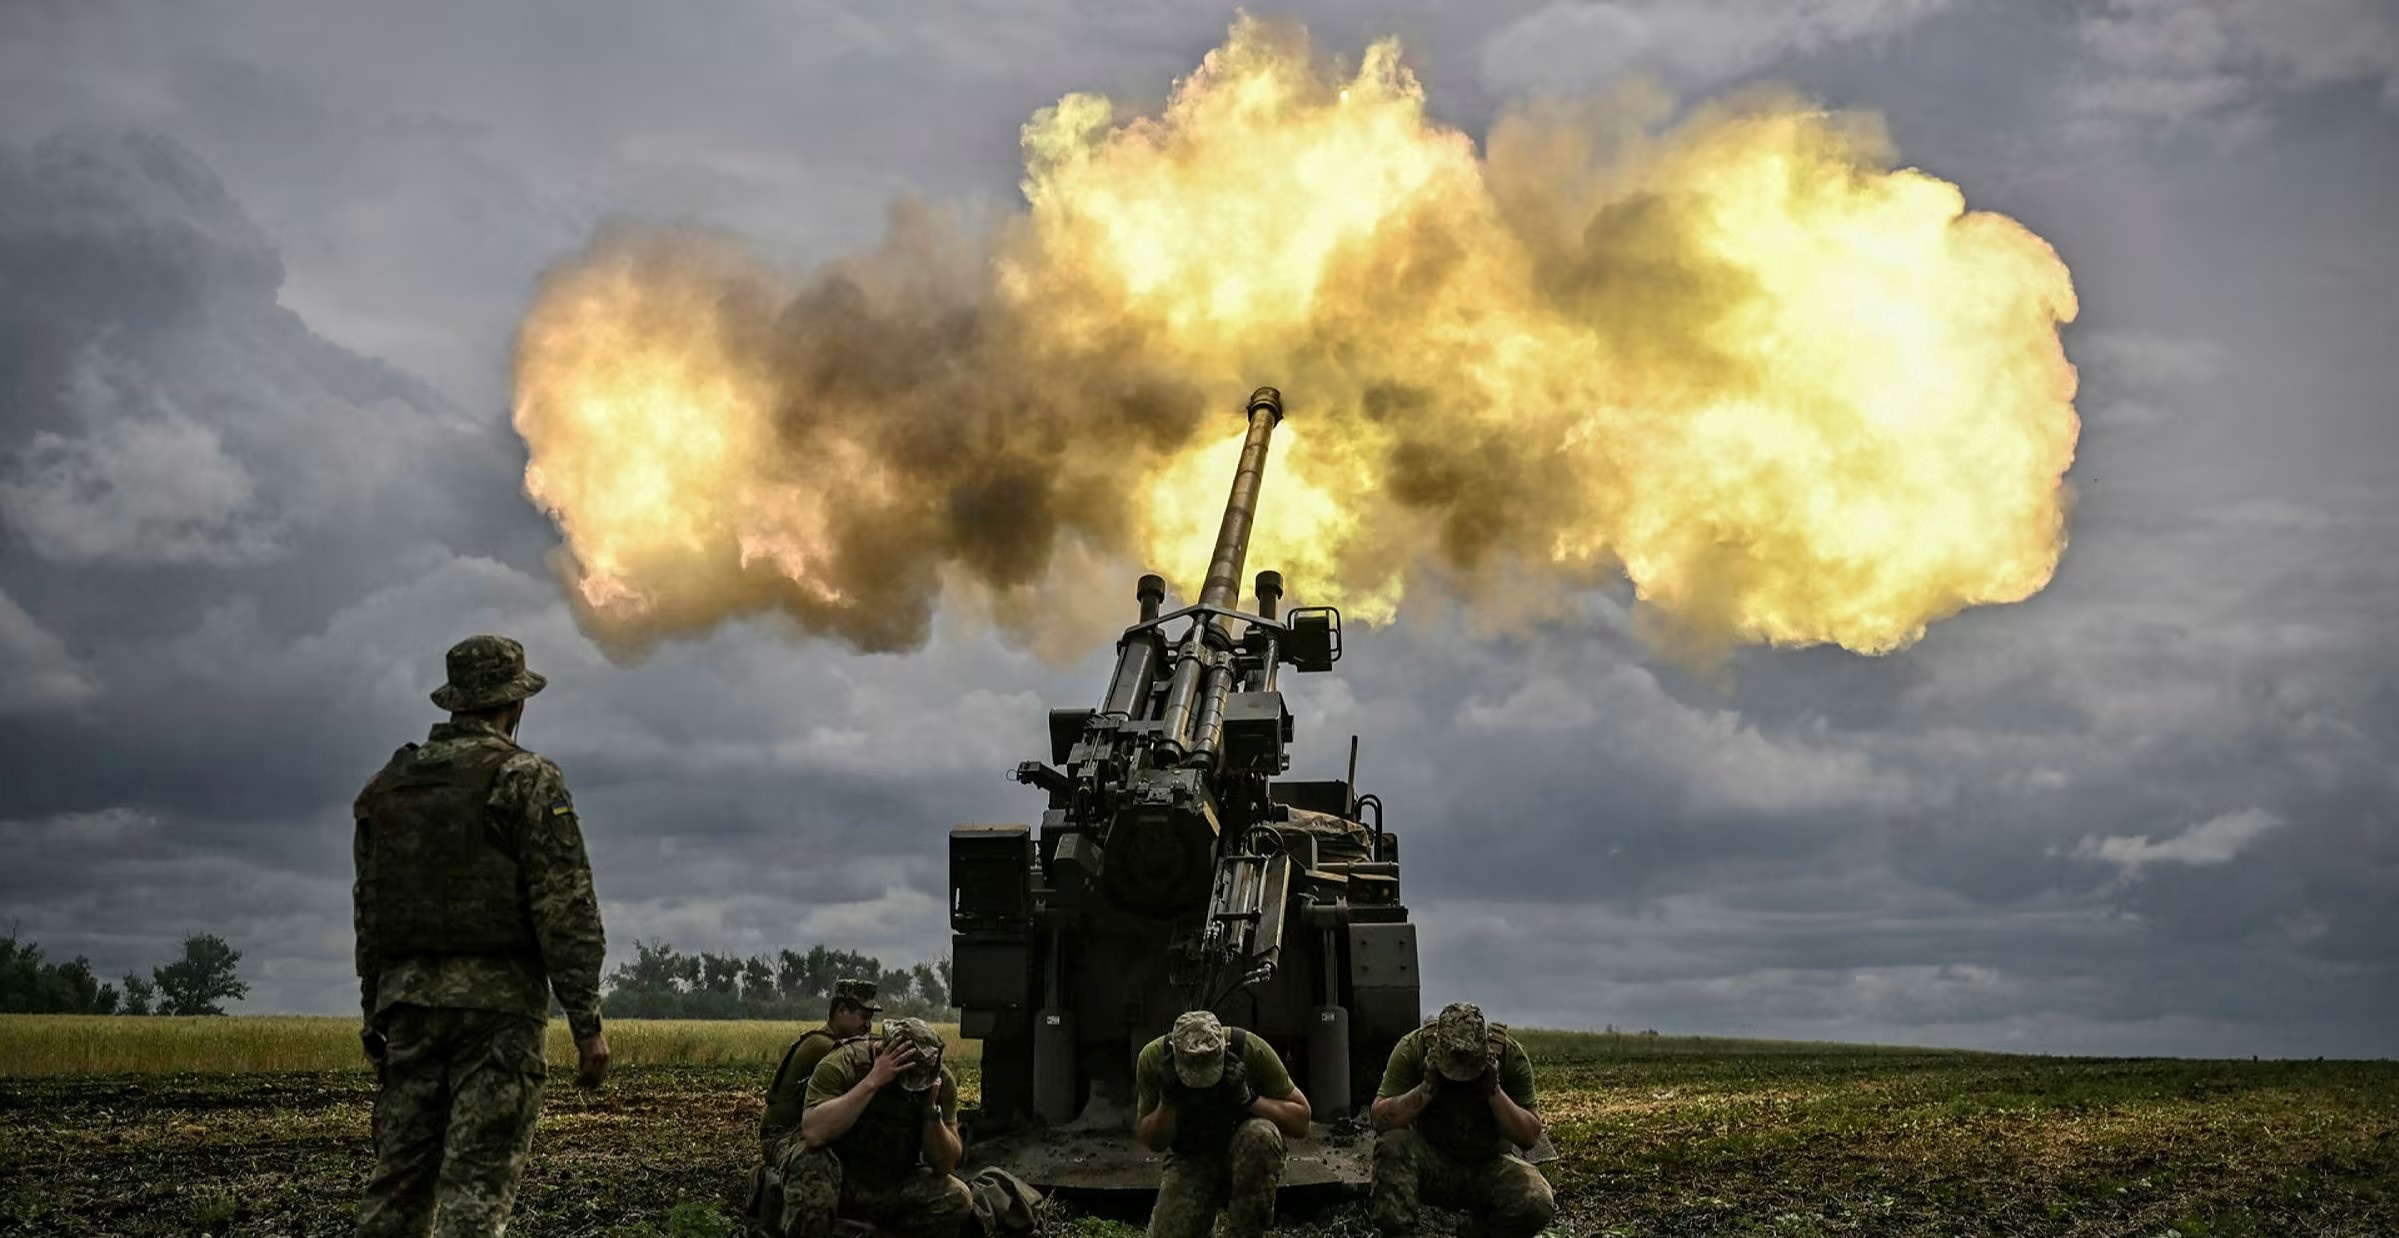 Phương Tây sắp cạn vũ khí viện trợ Ukraine - ảnh 1